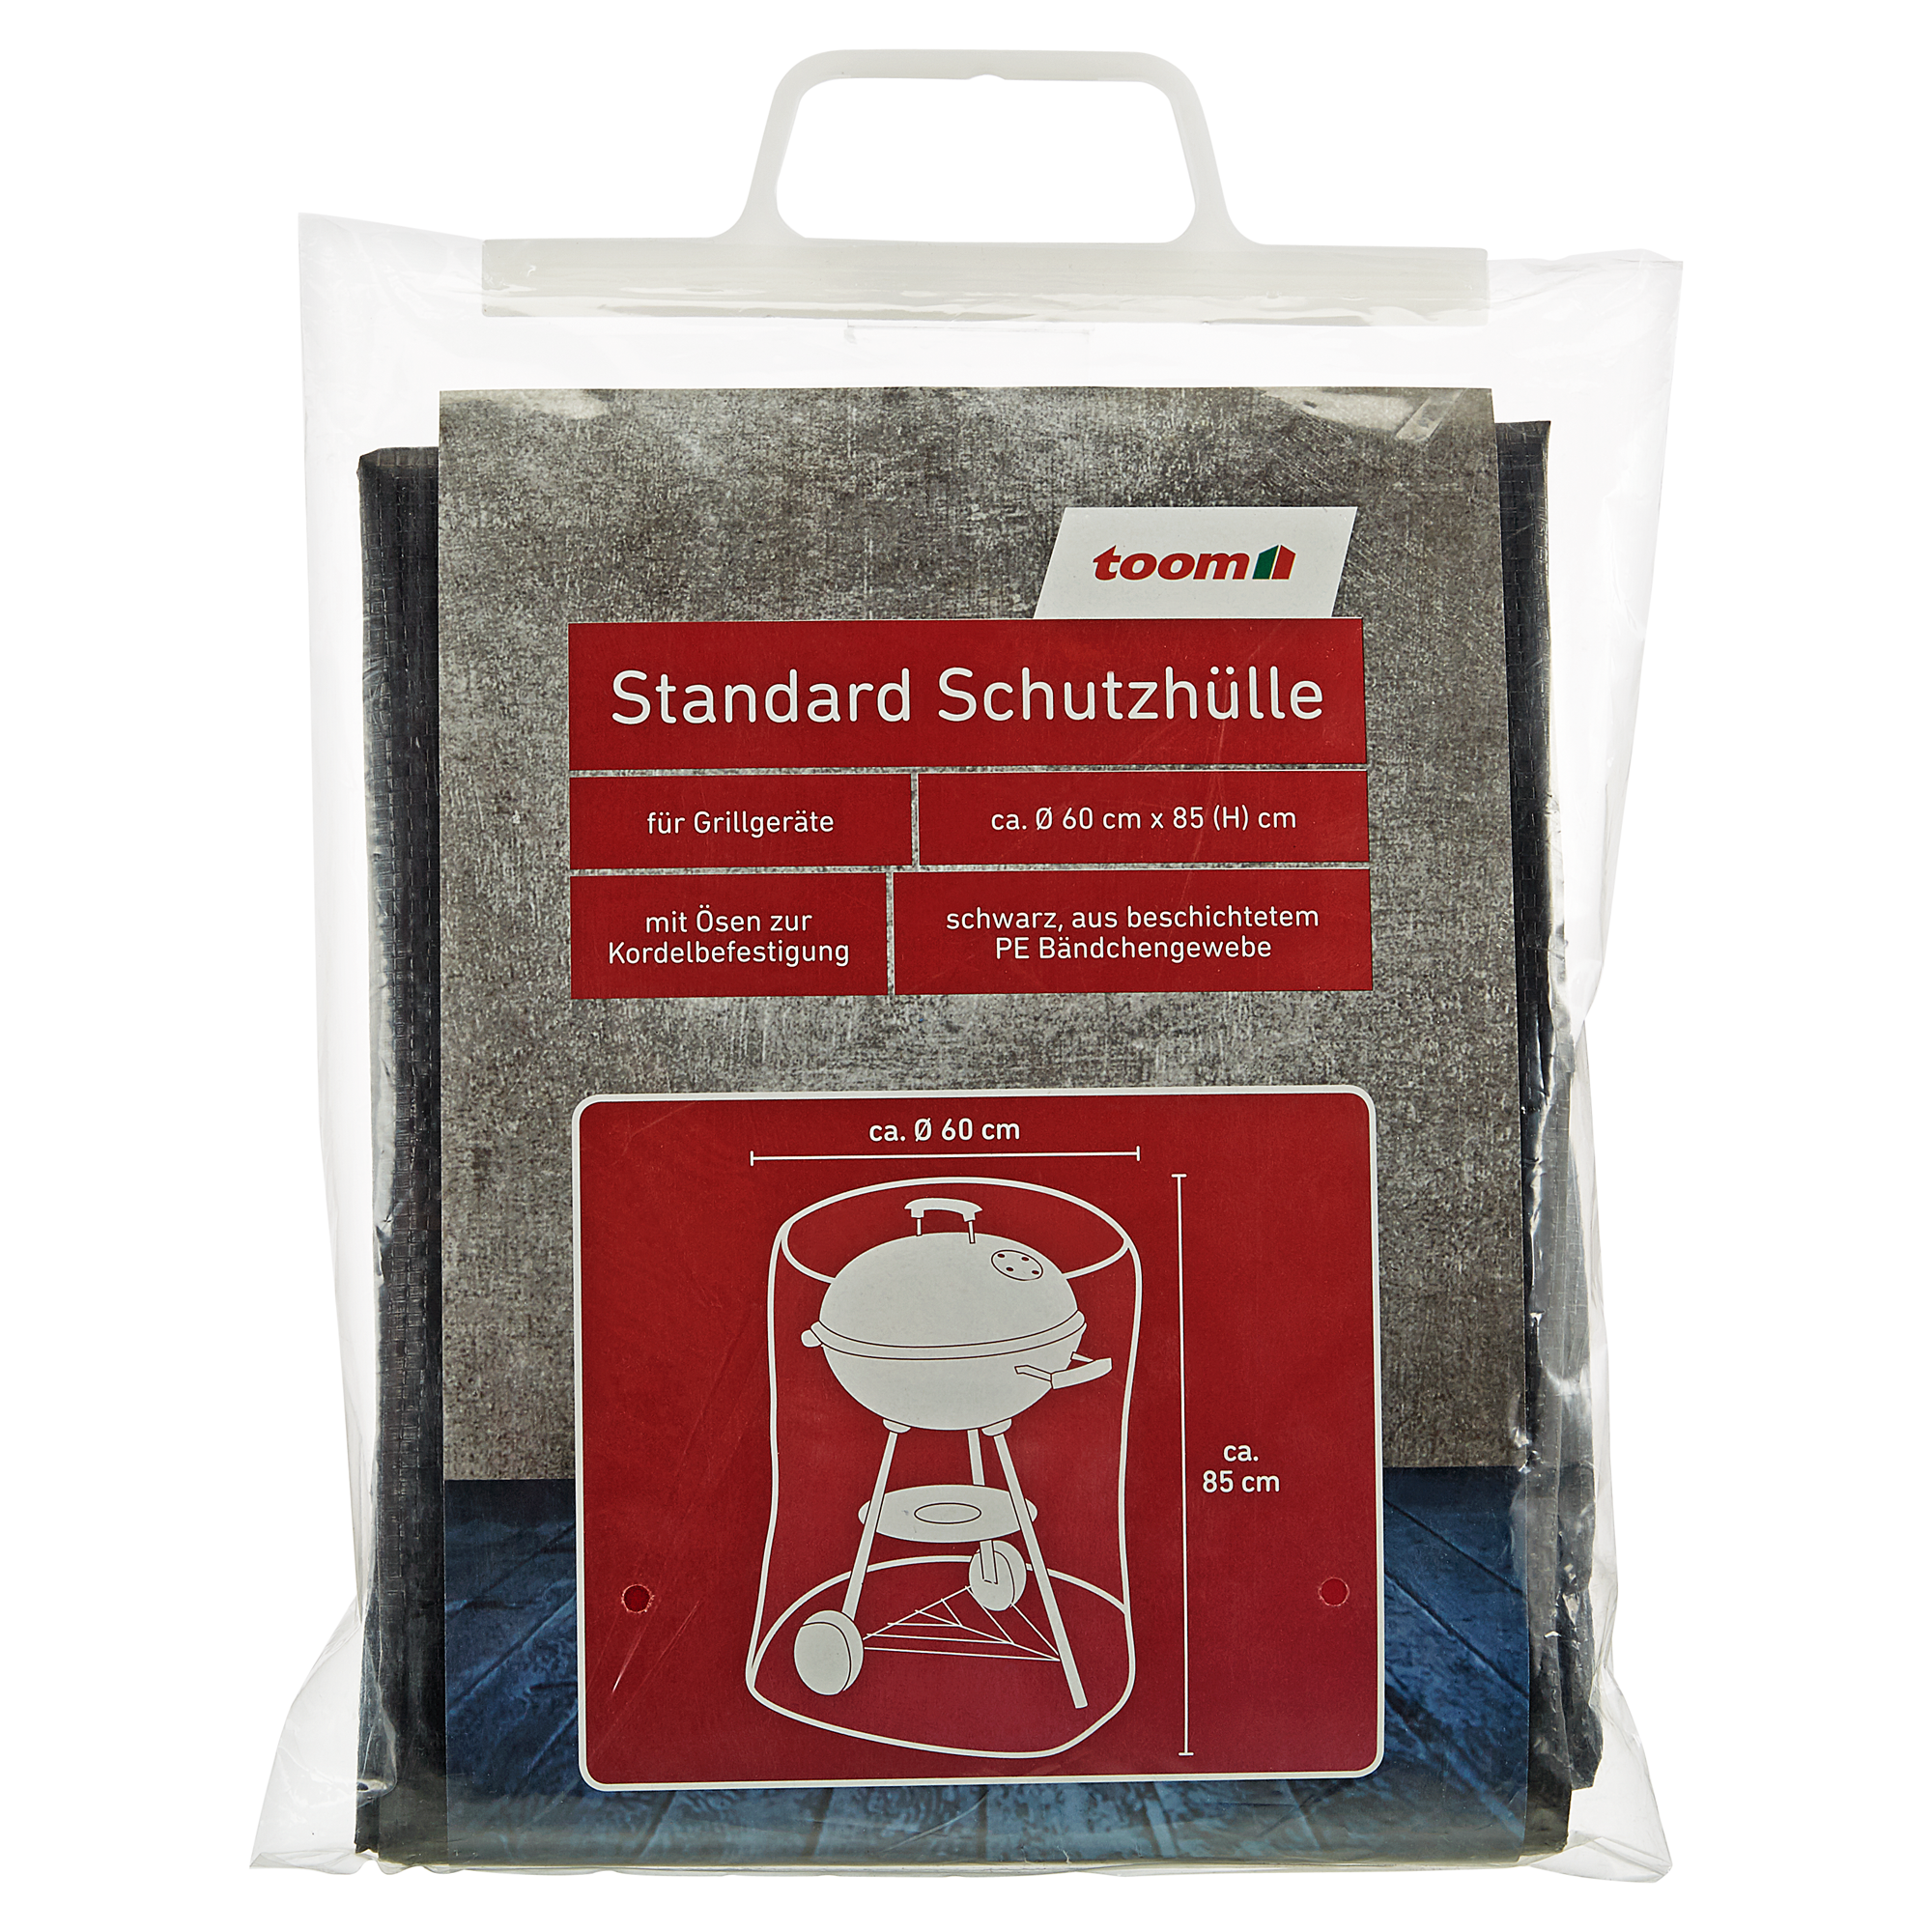 Standard Schutzhülle für Kugelgrills PE-Bändchengewebe schwarz Ø 60 x 85 cm + product picture